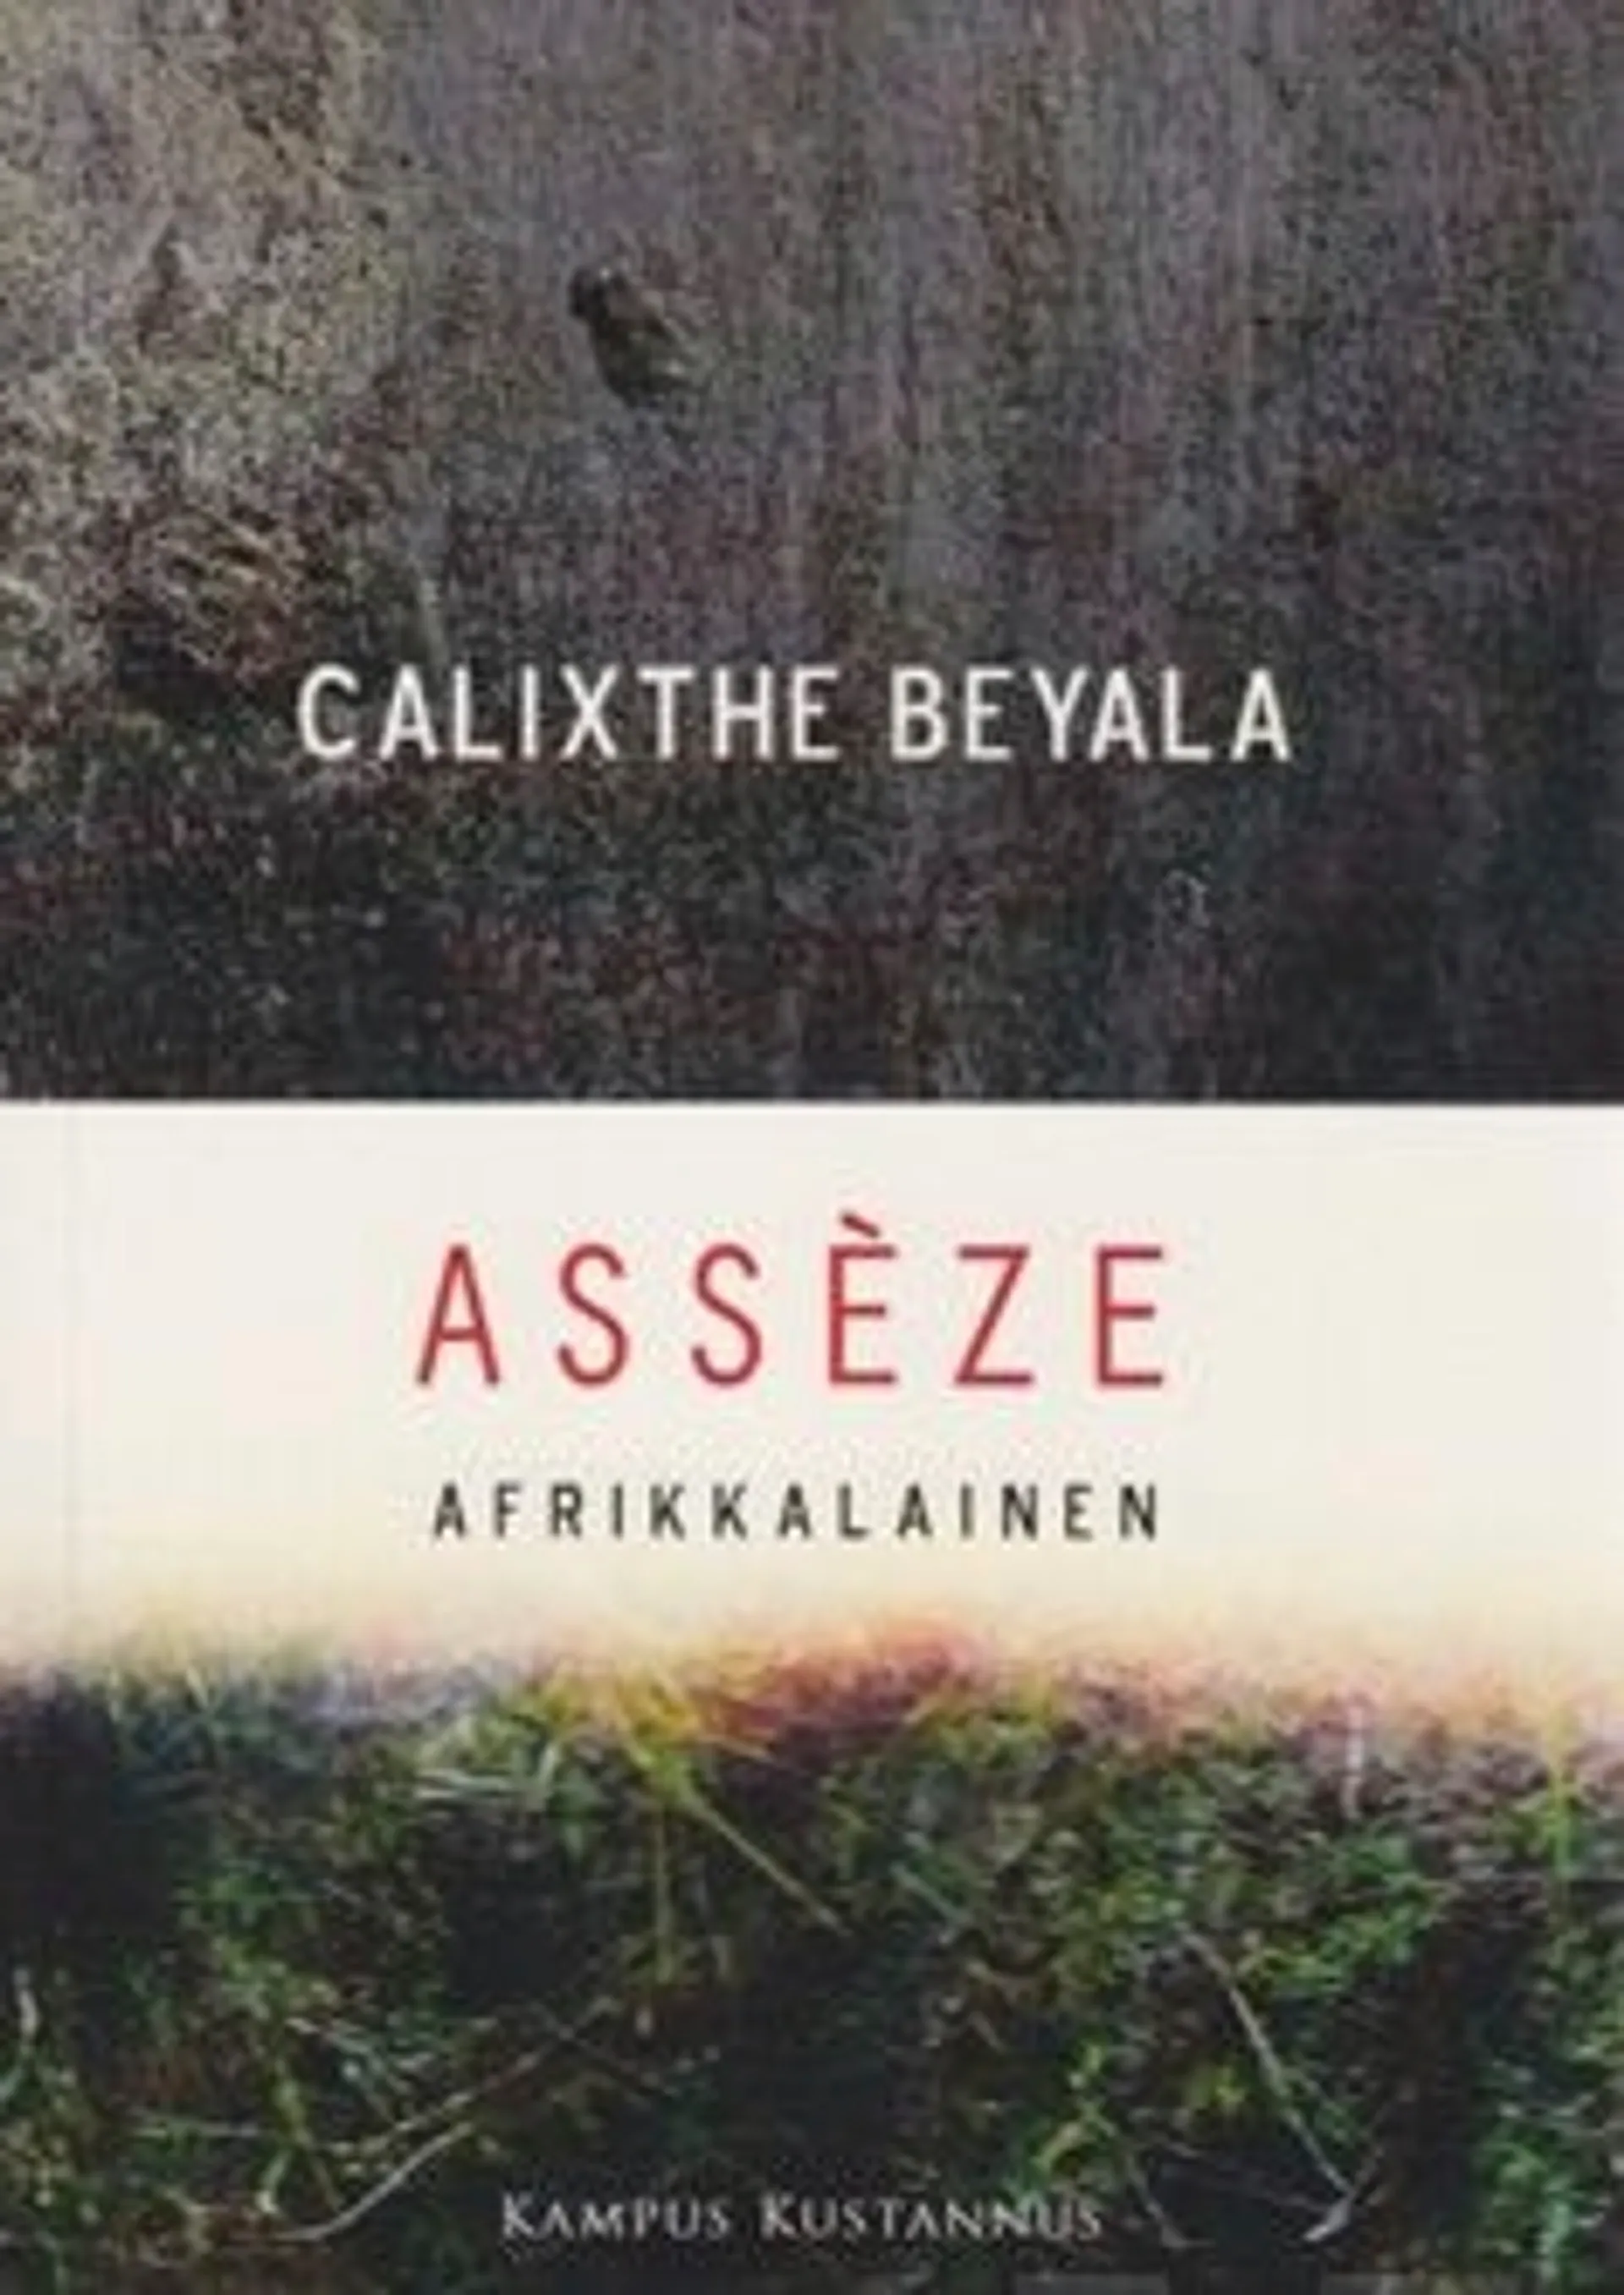 Beyala, Asseze, afrikkalainen